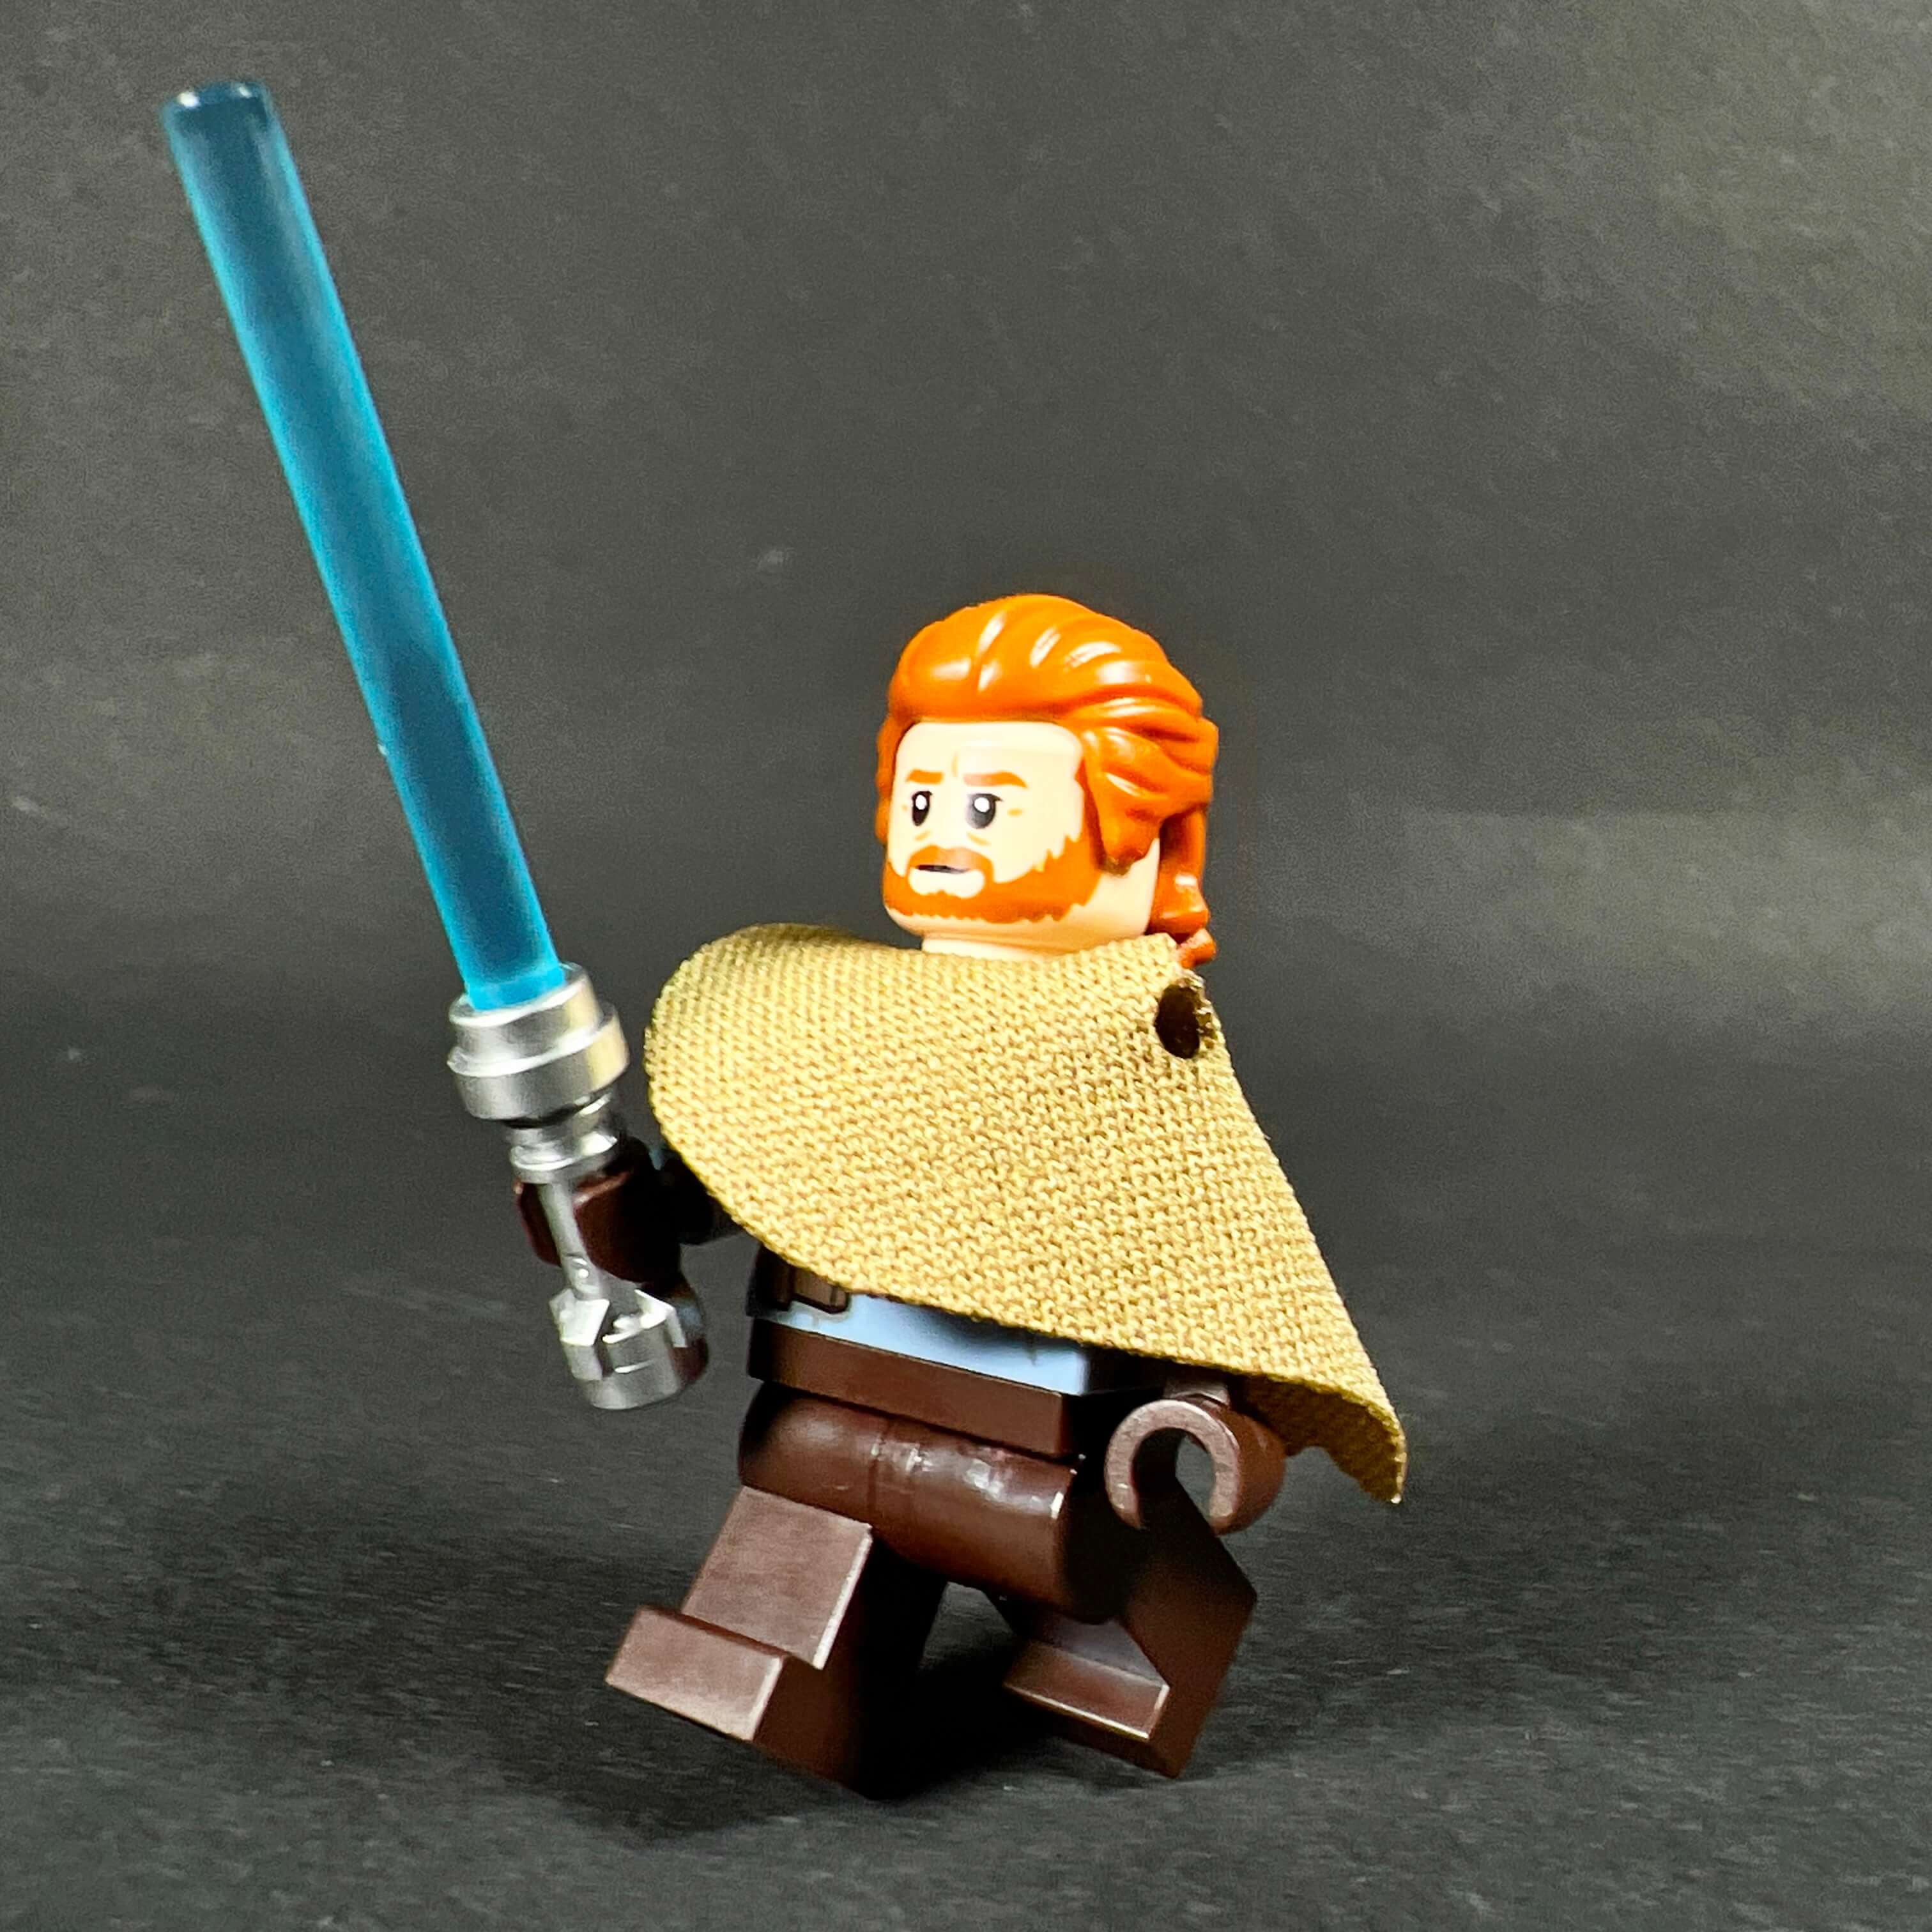 75336 - LEGO® Star Wars - Le Vaisseau Scythe de l'Inquisiteur LEGO